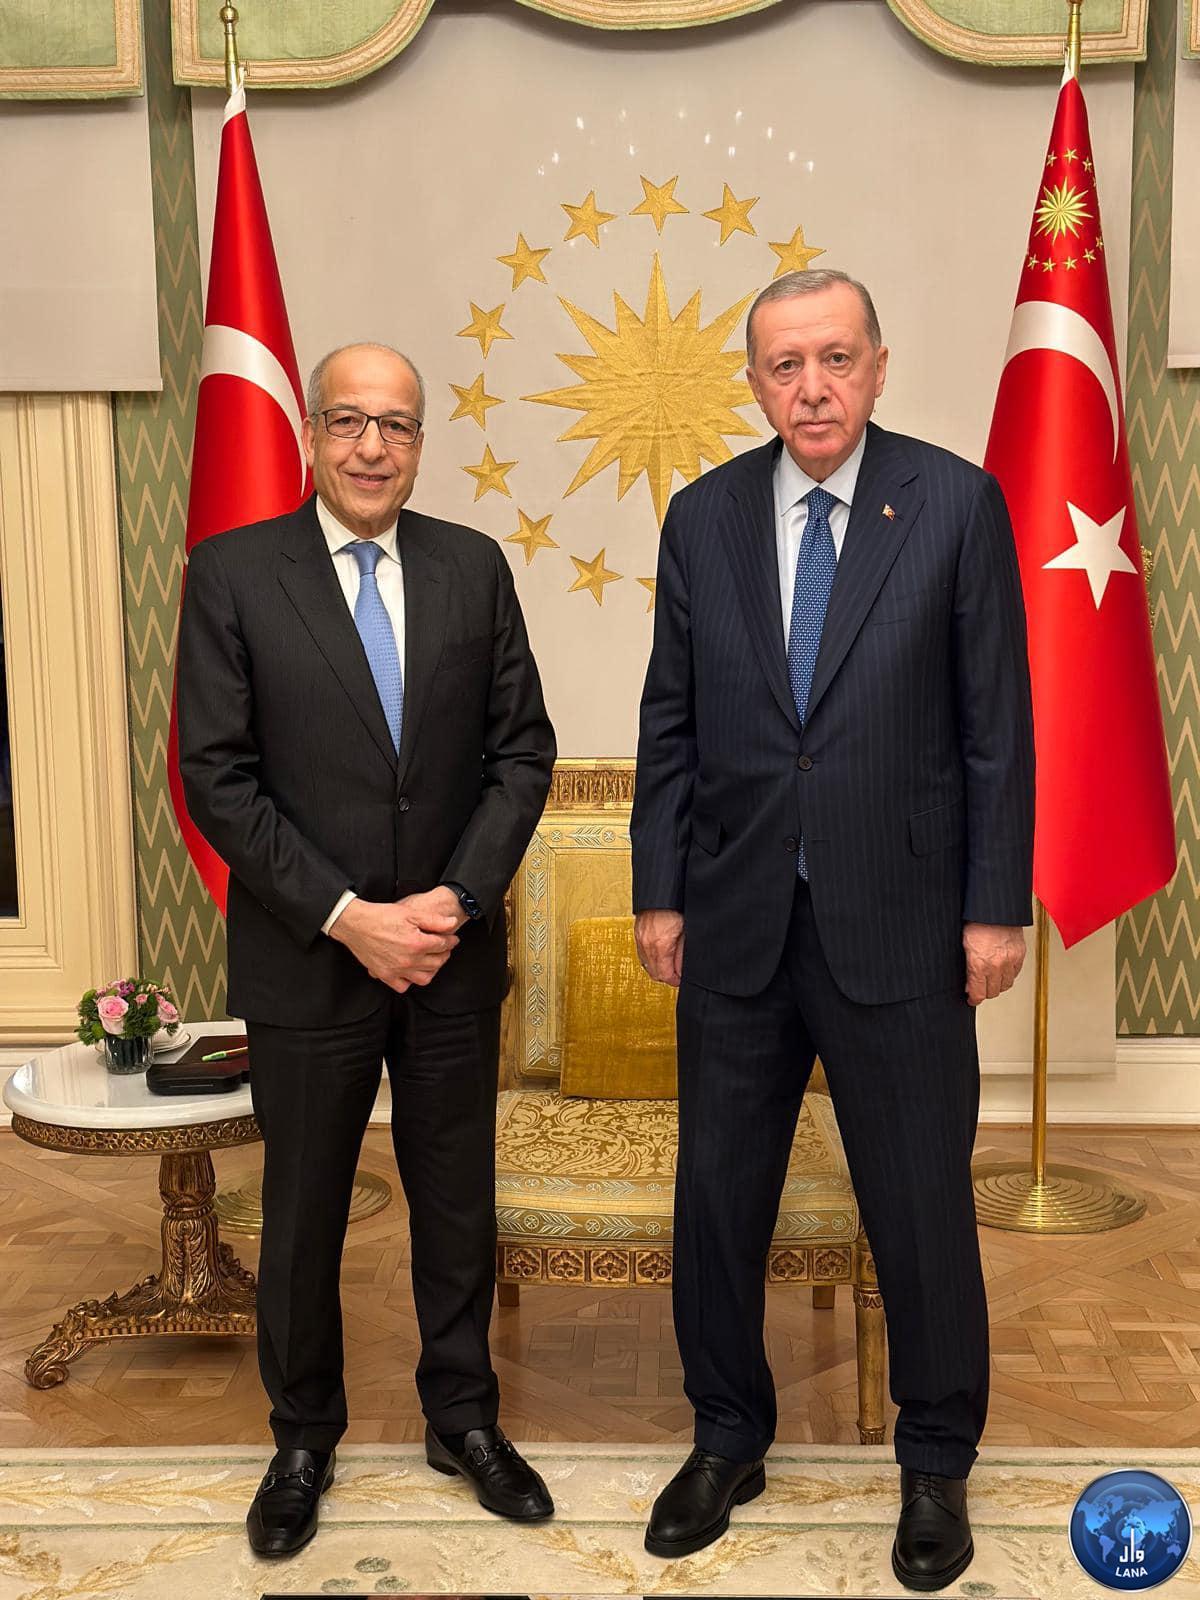 Erdogan and El-Kabeer discuss challenges facing the CBL.